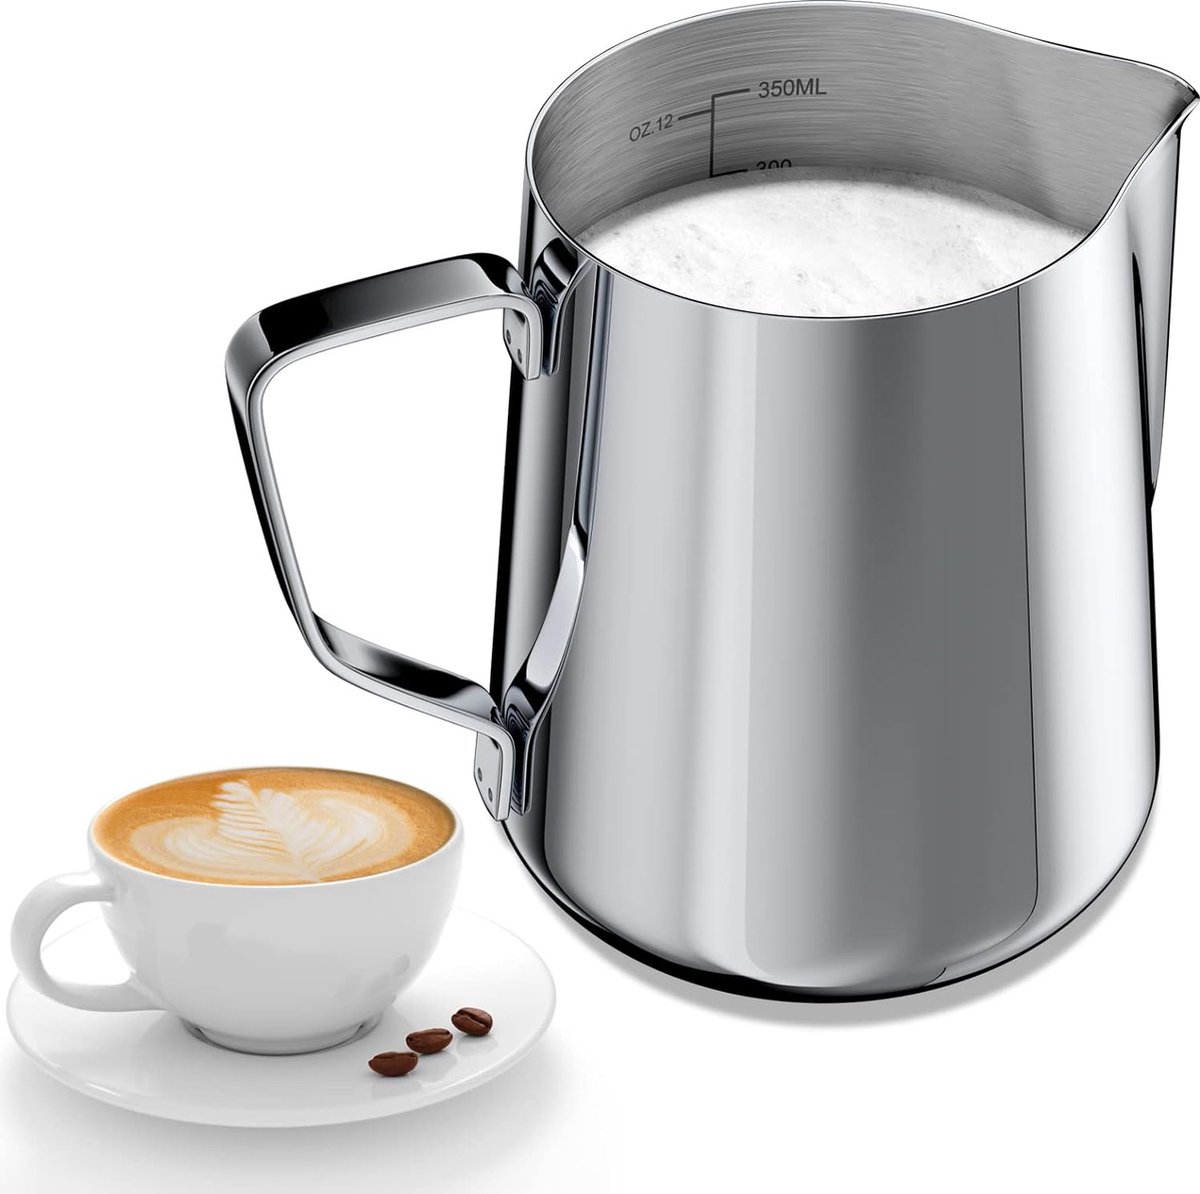 350 ml melkkannetje voor het opschuimen van melk 304 roestvrij staal melkkan met meting markering 12 oz voor barista melkpitcher voor cappuccino latte kunst espresso perfect voor koffiezeef zilver